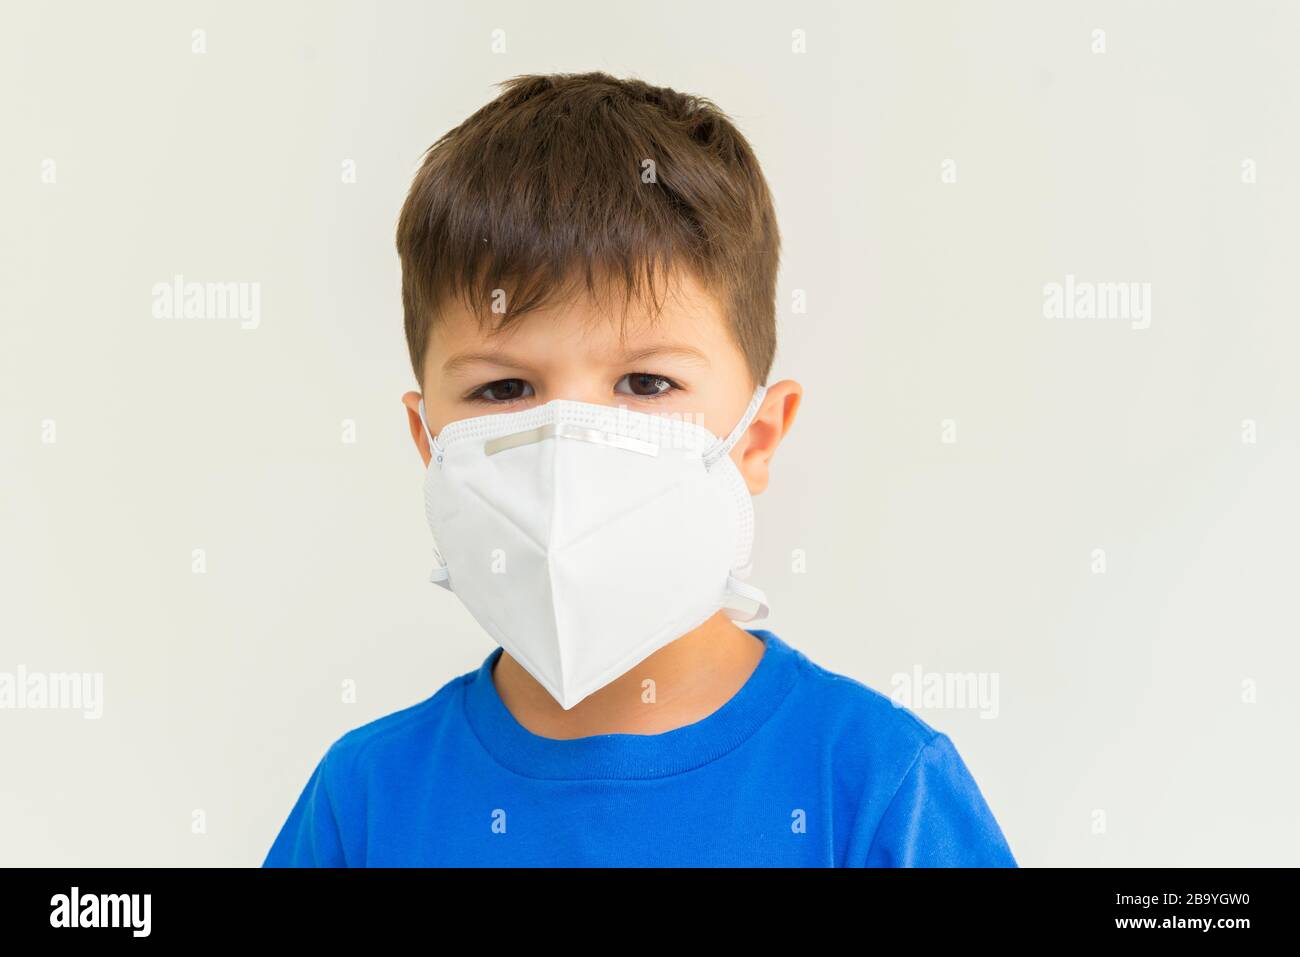 Gros plan d'un garçon caucasien portant un masque chirurgical. Masque facial pour la protection contre les épidémies de coronavirus. Concept de protection contre la thrée biologique Banque D'Images